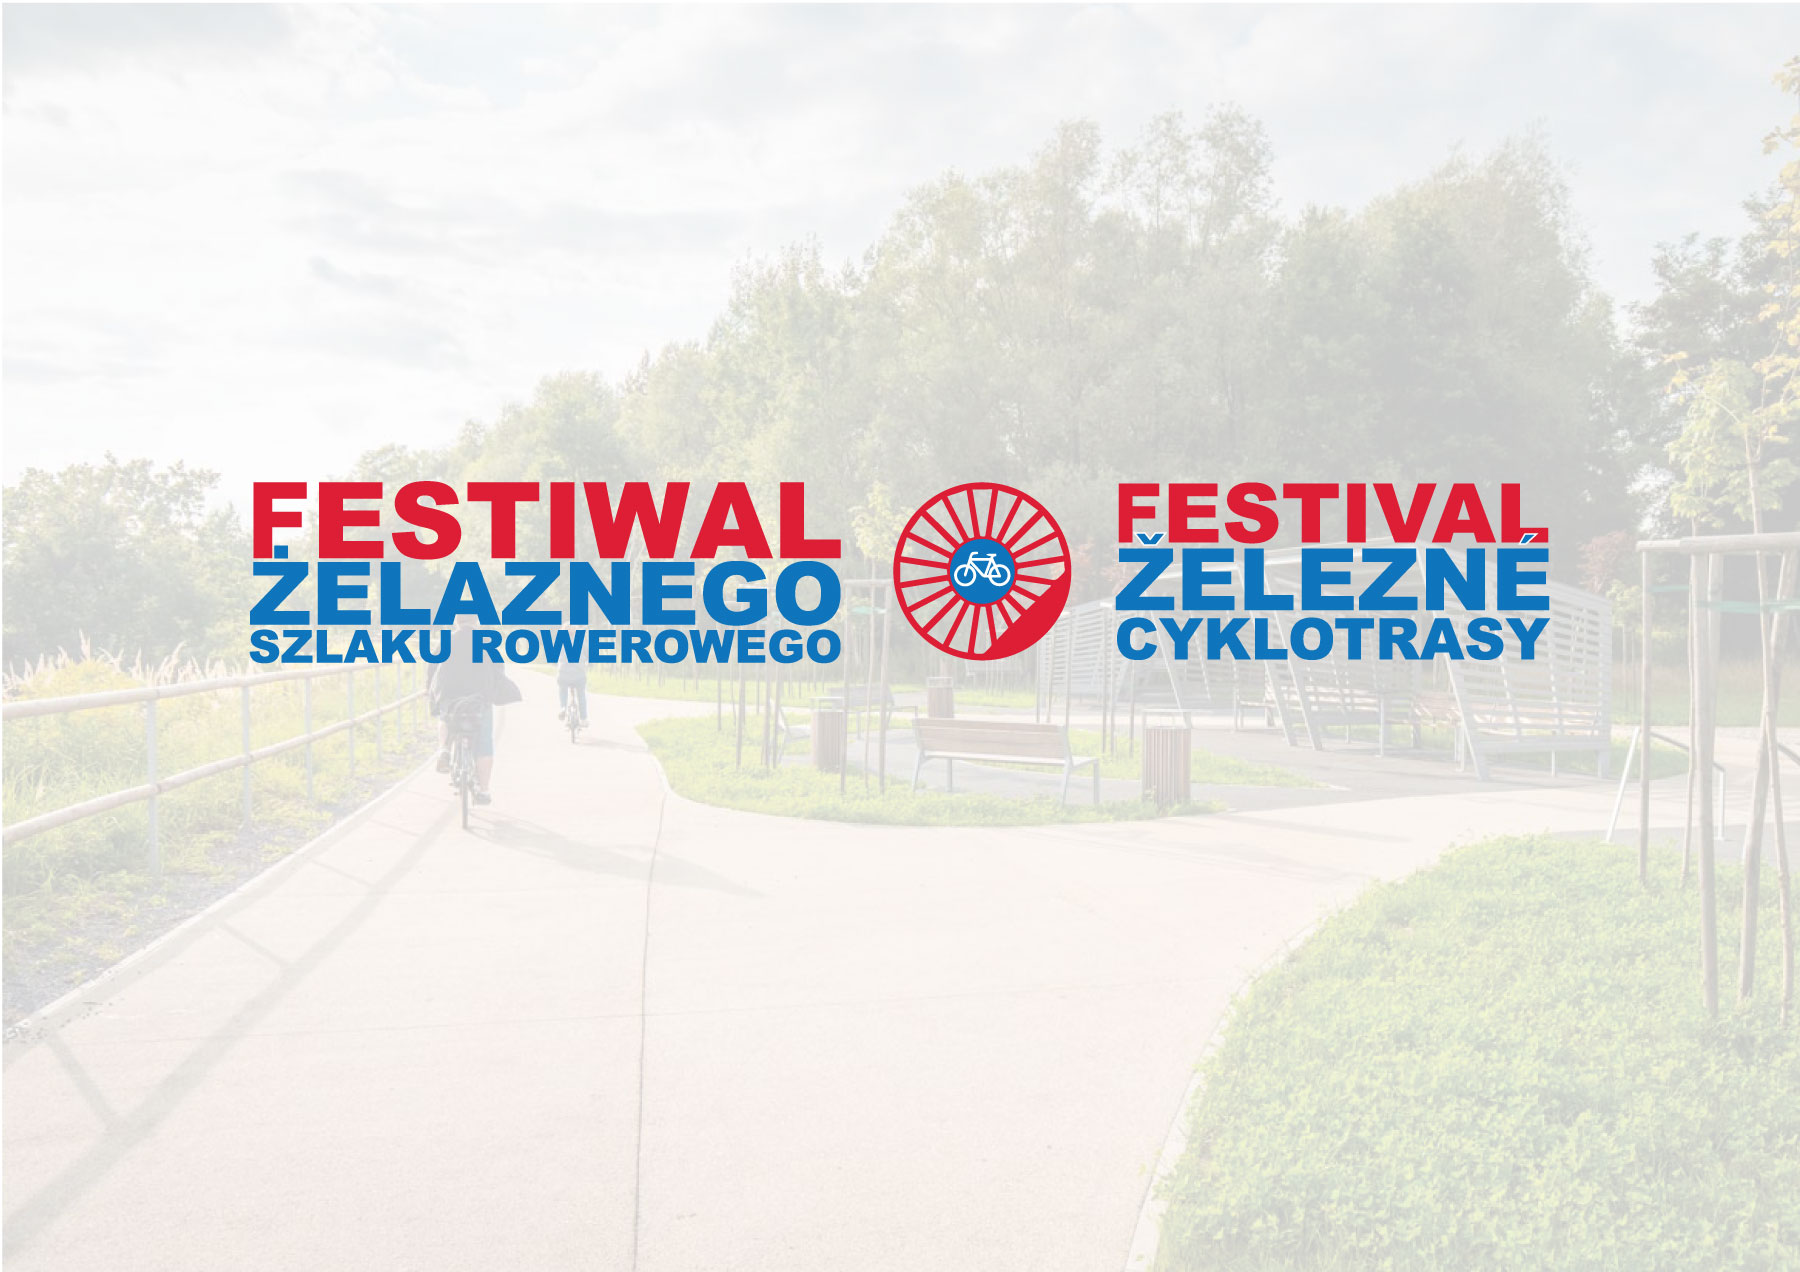 Festiwal Żelaznego Szlaku Rowerowego zapowiada się ciekawie